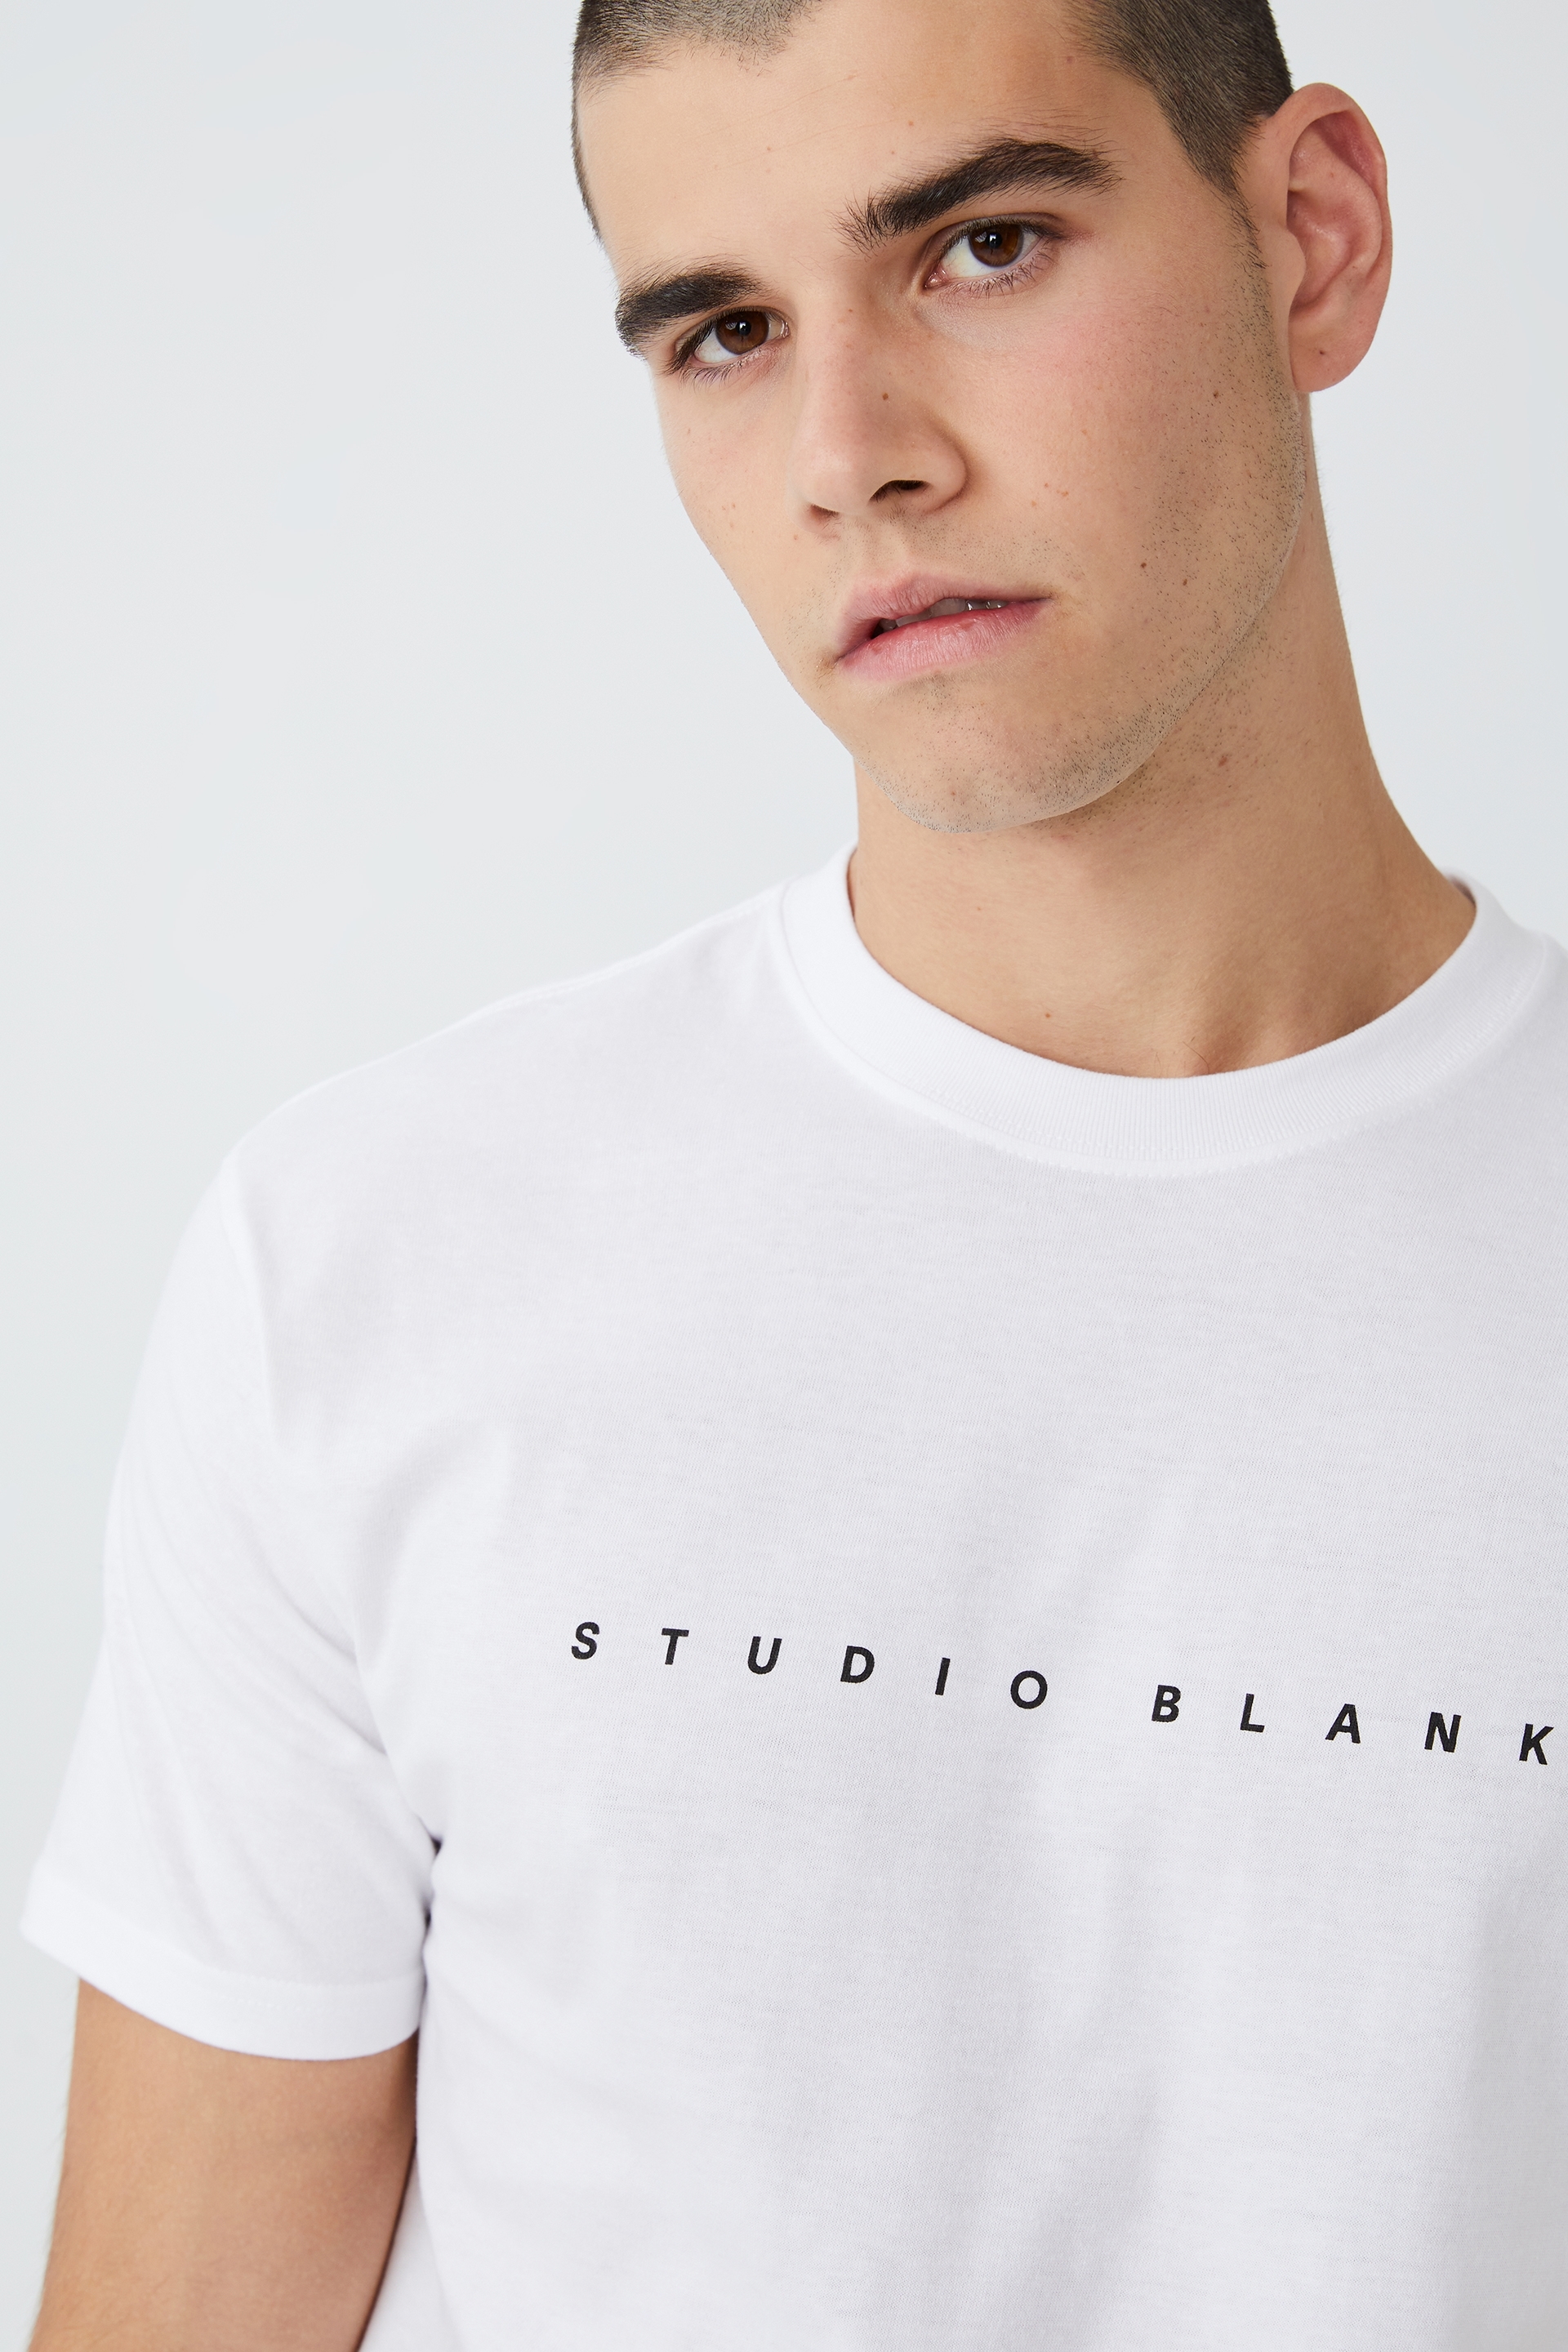 Cotton On Men - Easy T-Shirt - White/studio blank